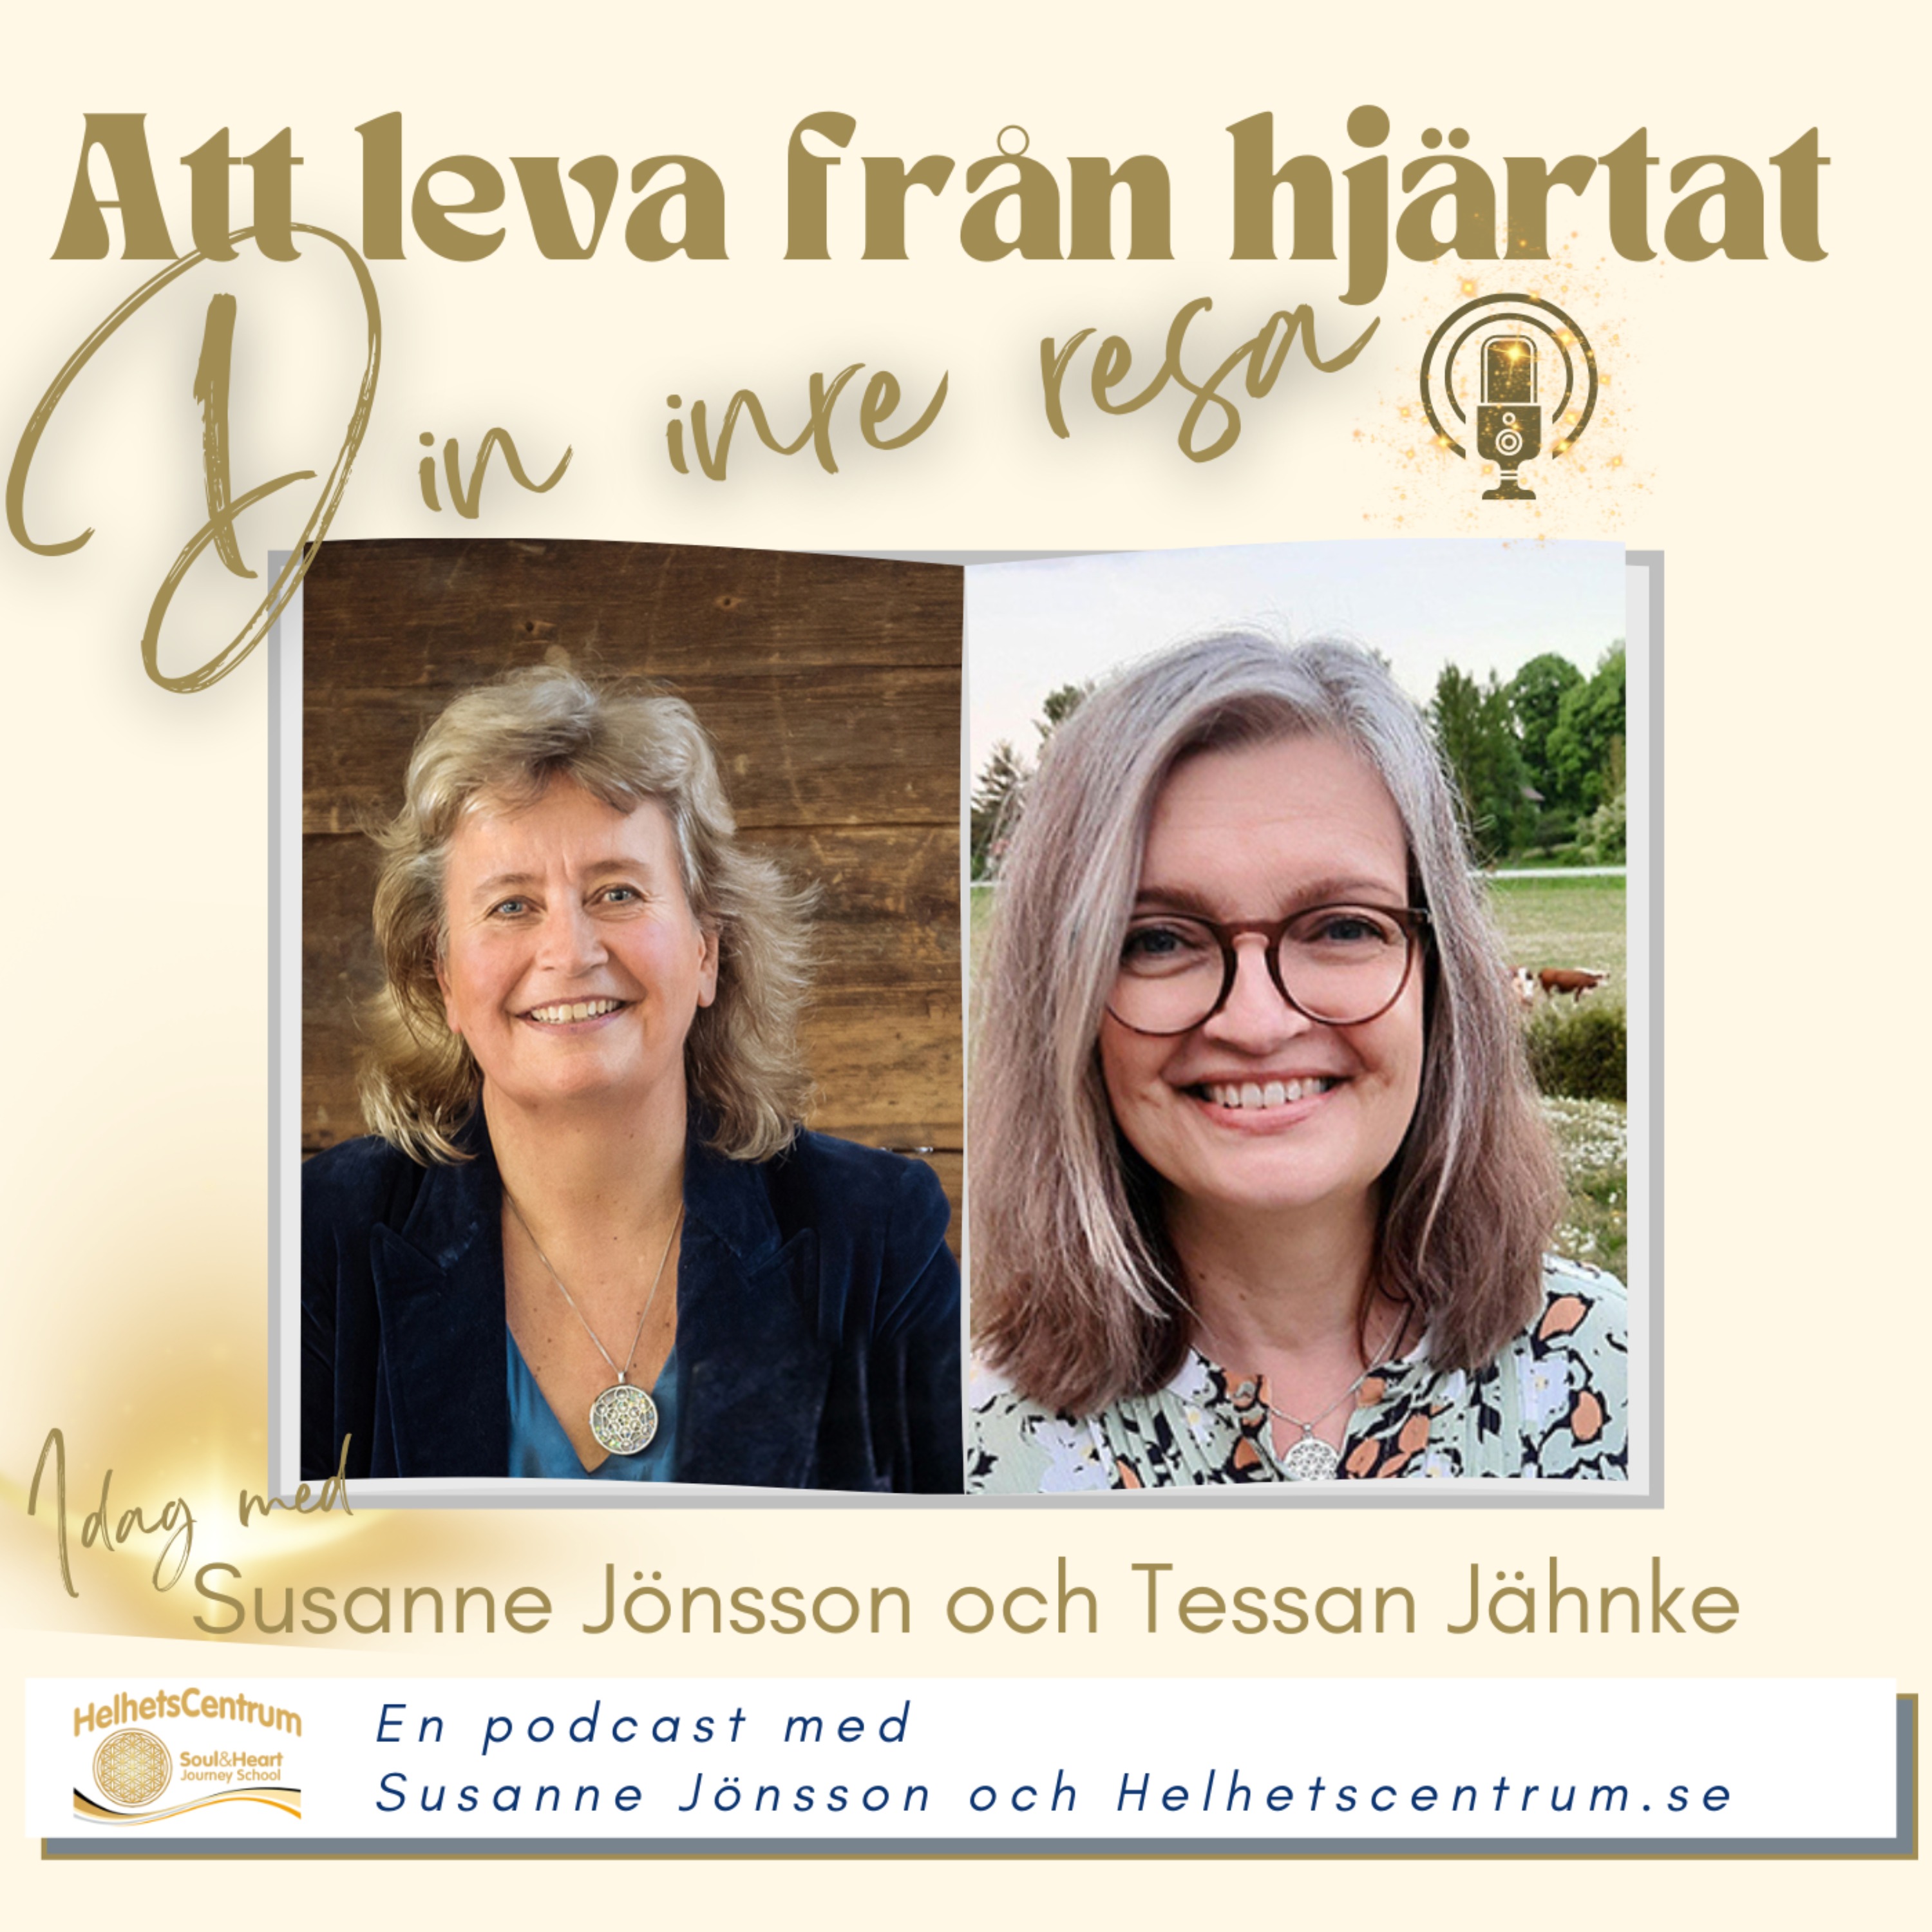 Tessan Jähnke berättar om sin inre resa och om det som påverkat henne mest